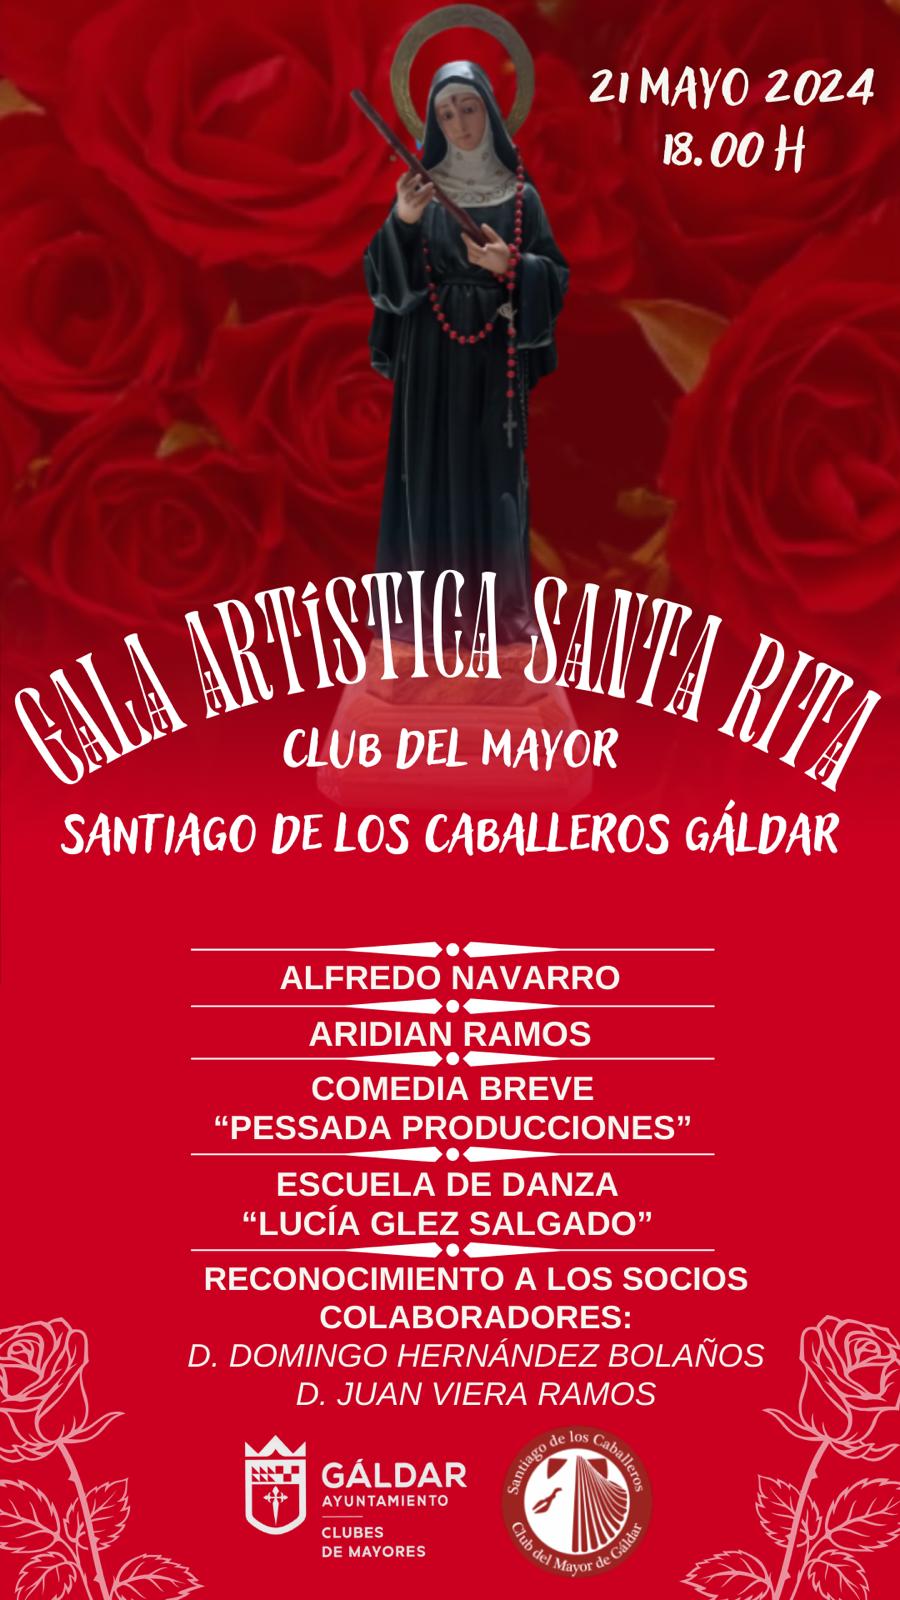 El Club del Mayor acoge el martes una Gala Artística en honor a Santa Rita